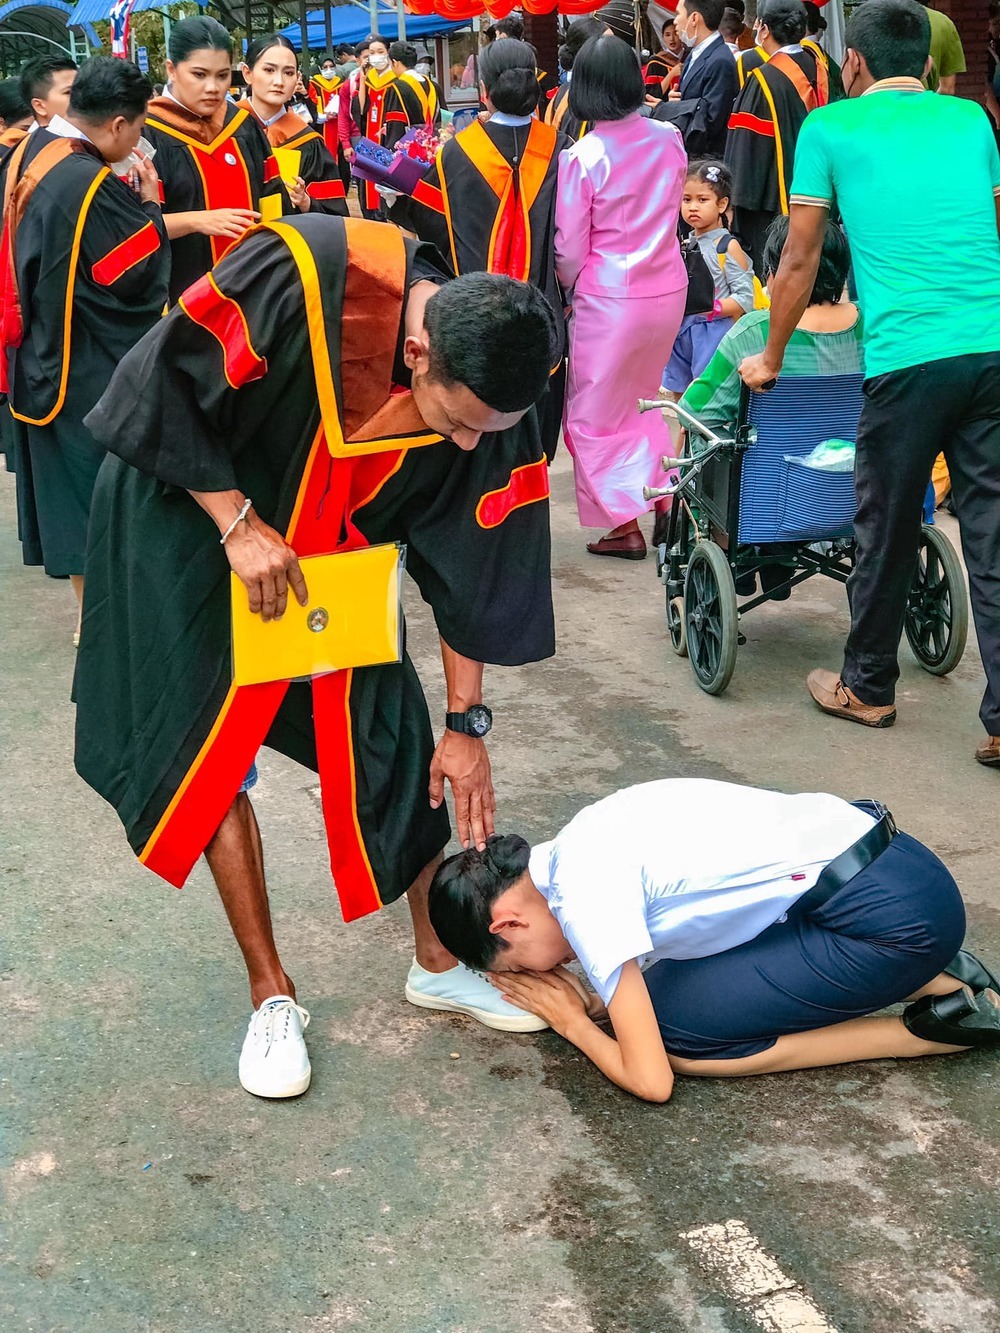  
Em gái quỳ gối để cảm ơn anh trai đã hy sinh bản thân để cô được đi học tiếp. (Ảnh: FB Ying Chanita)